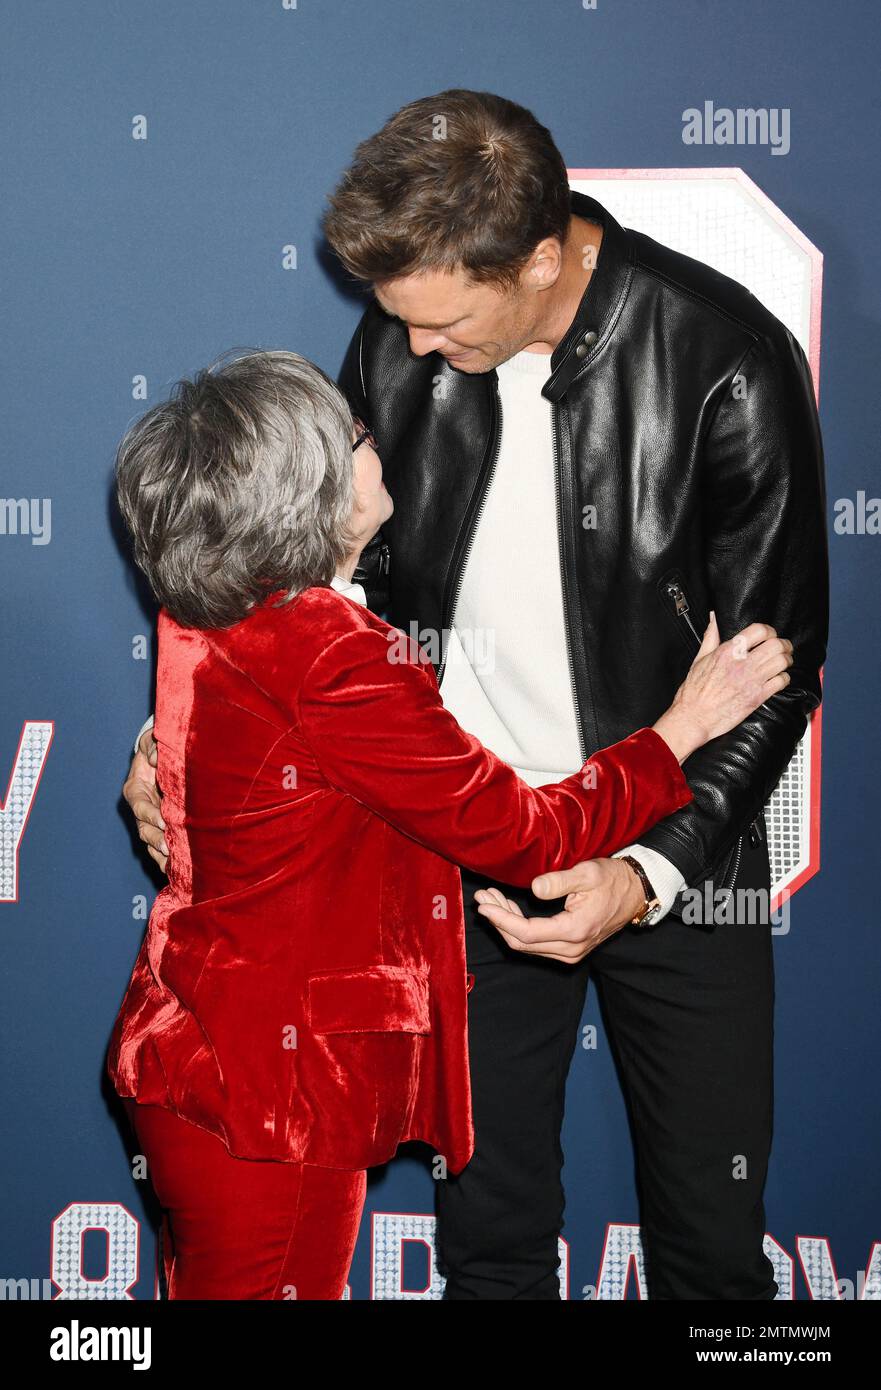 LOS ANGELES, CA - 31. JANUAR: (L-R) Sally Field und Tom Brady nehmen an der Los Angeles Premiere von Paramount Pictures' „80 for Brady“ bei Regen Teil Stockfoto